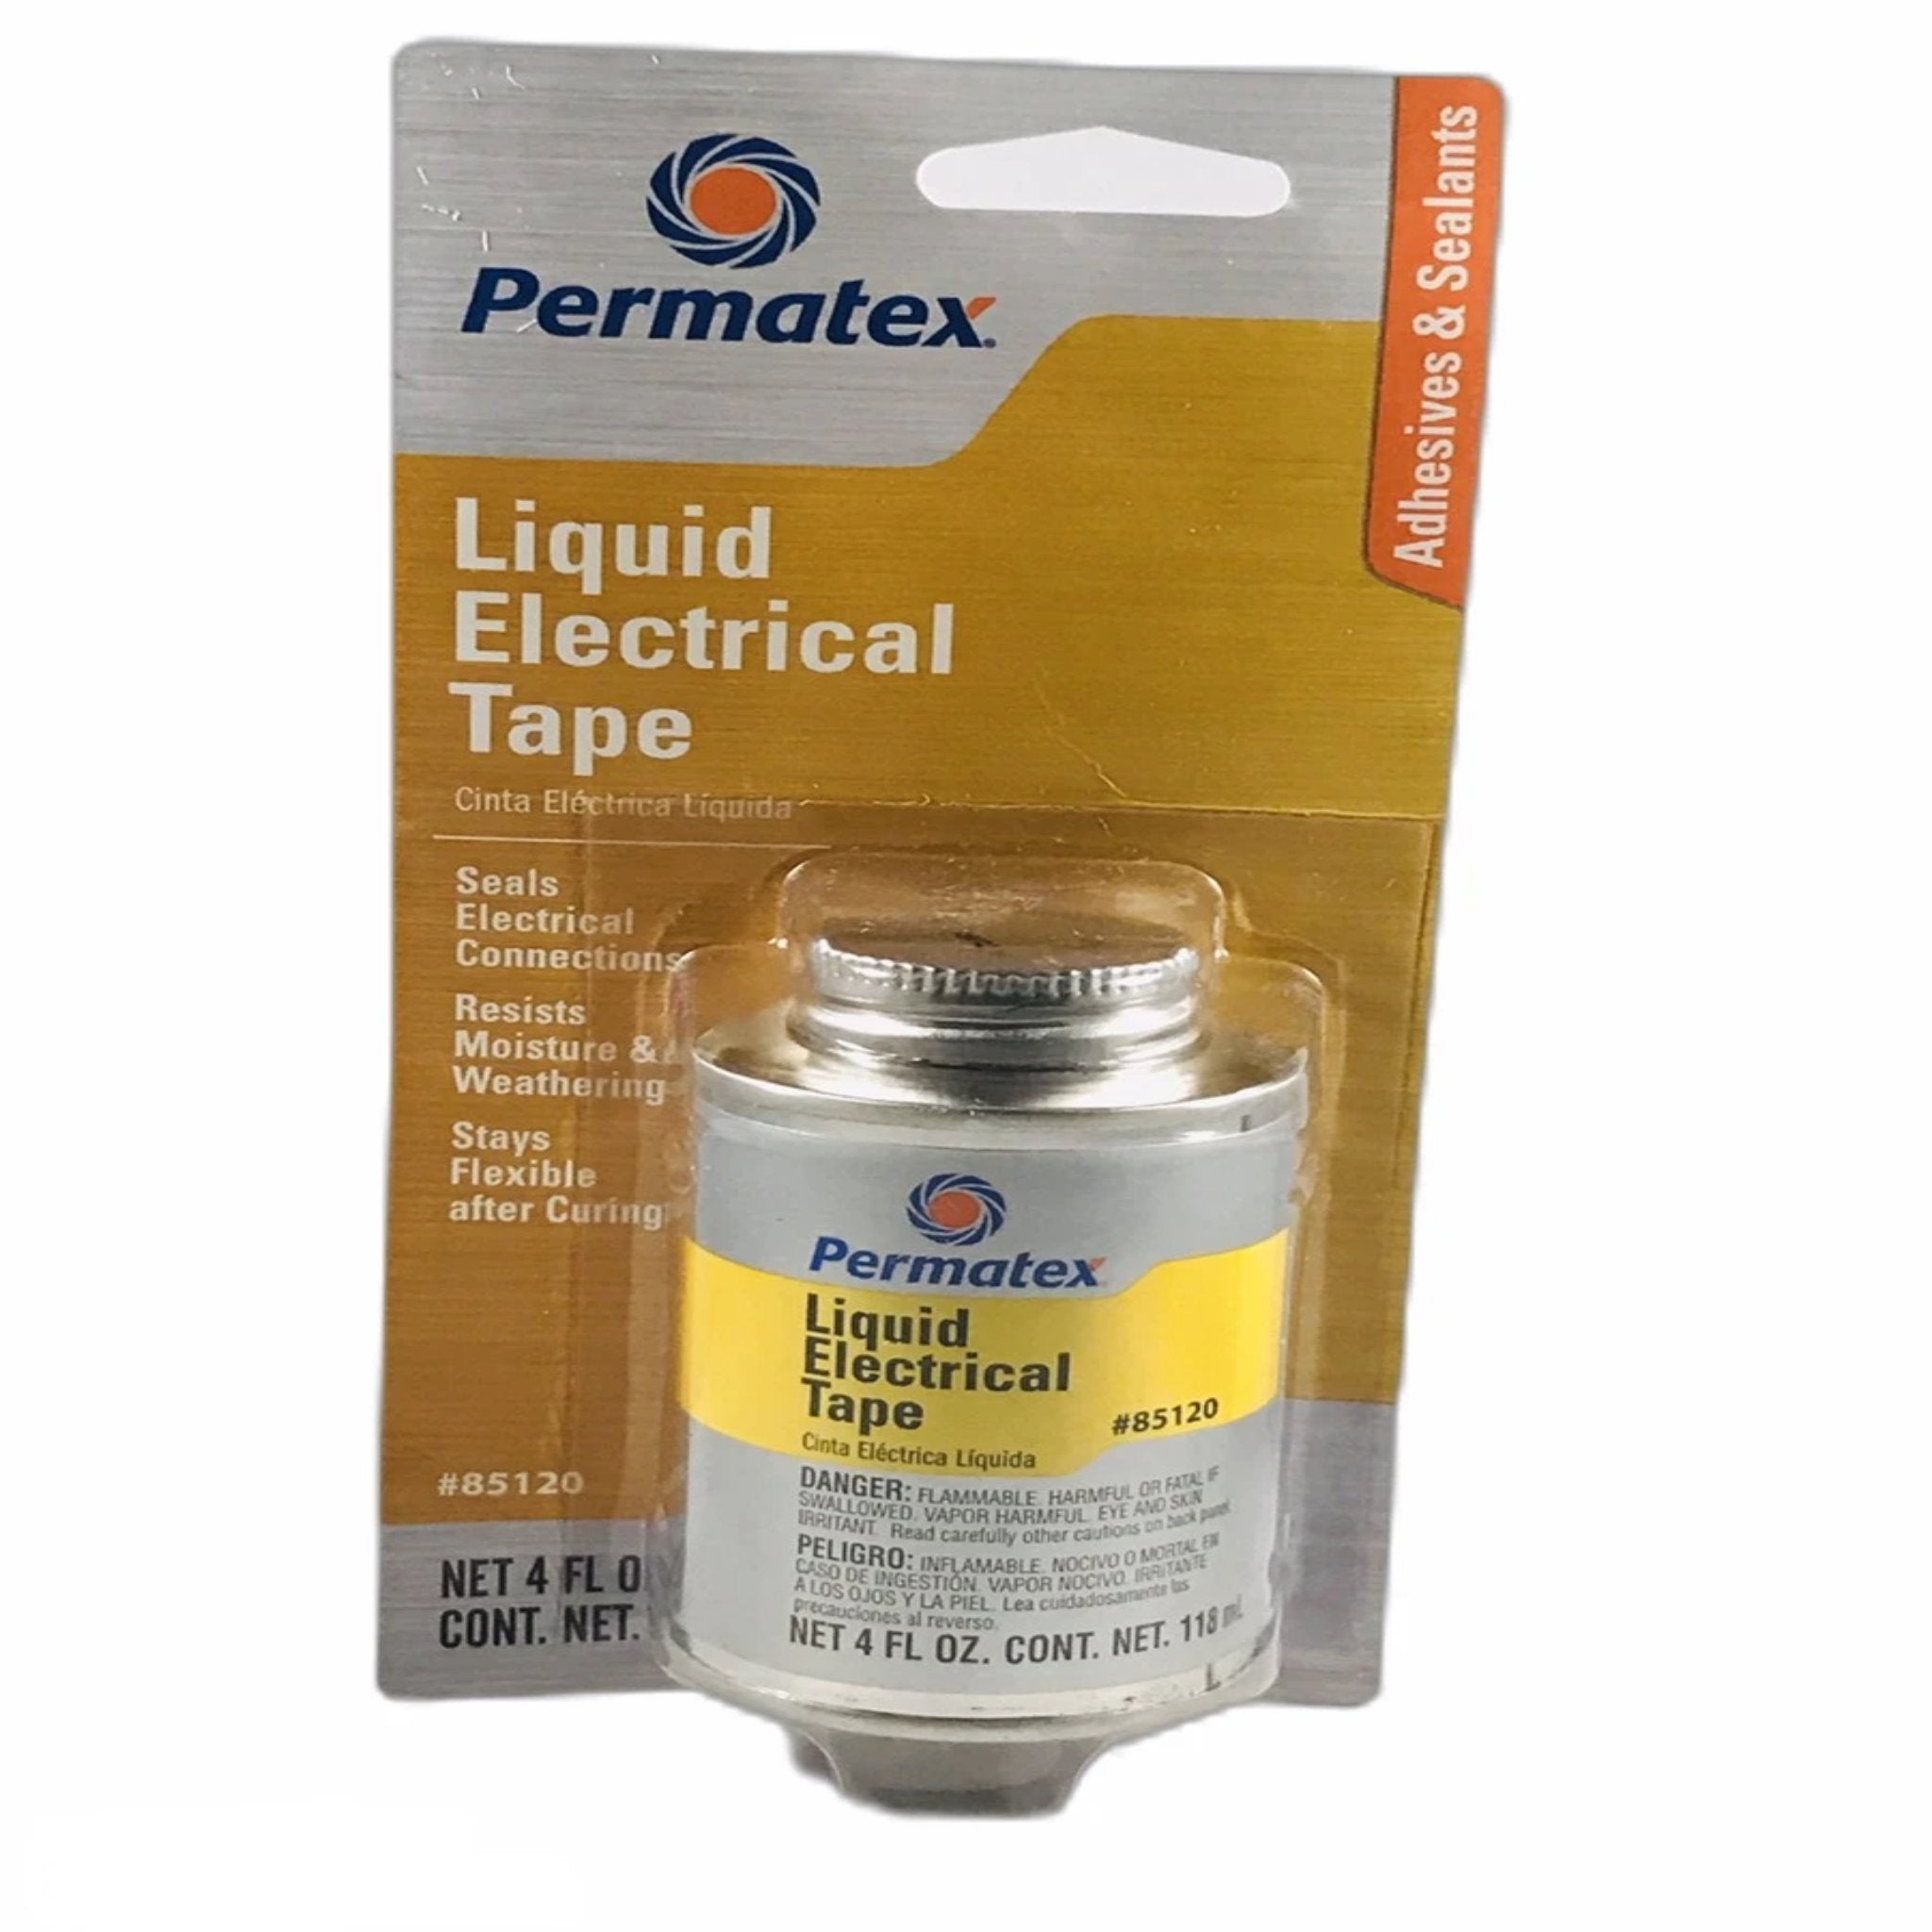 PERMATEX LIQUID ELECTRICAL TAPE  4 OZ 85120